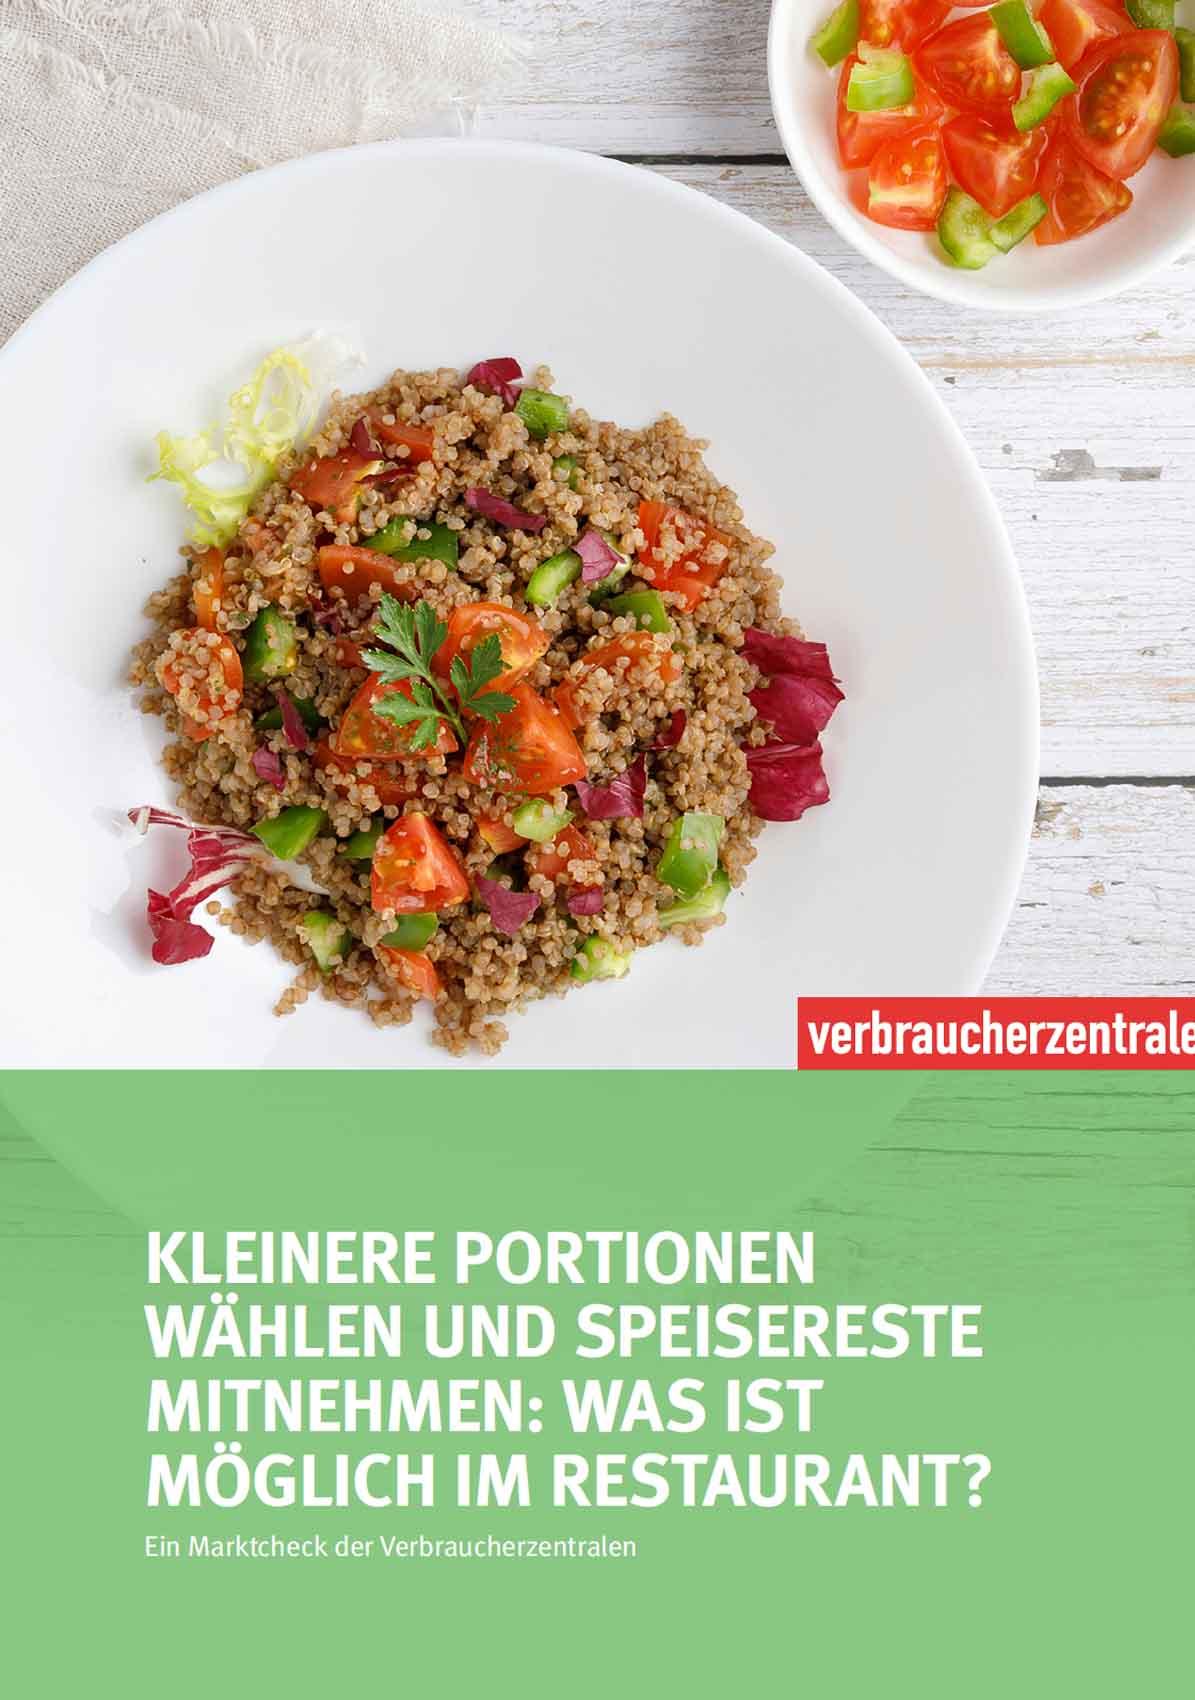 Bericht zum Marktcheck Lebensmittelverschwendung in der Gastronomie der Verbraucherzentralen (2022/2023)